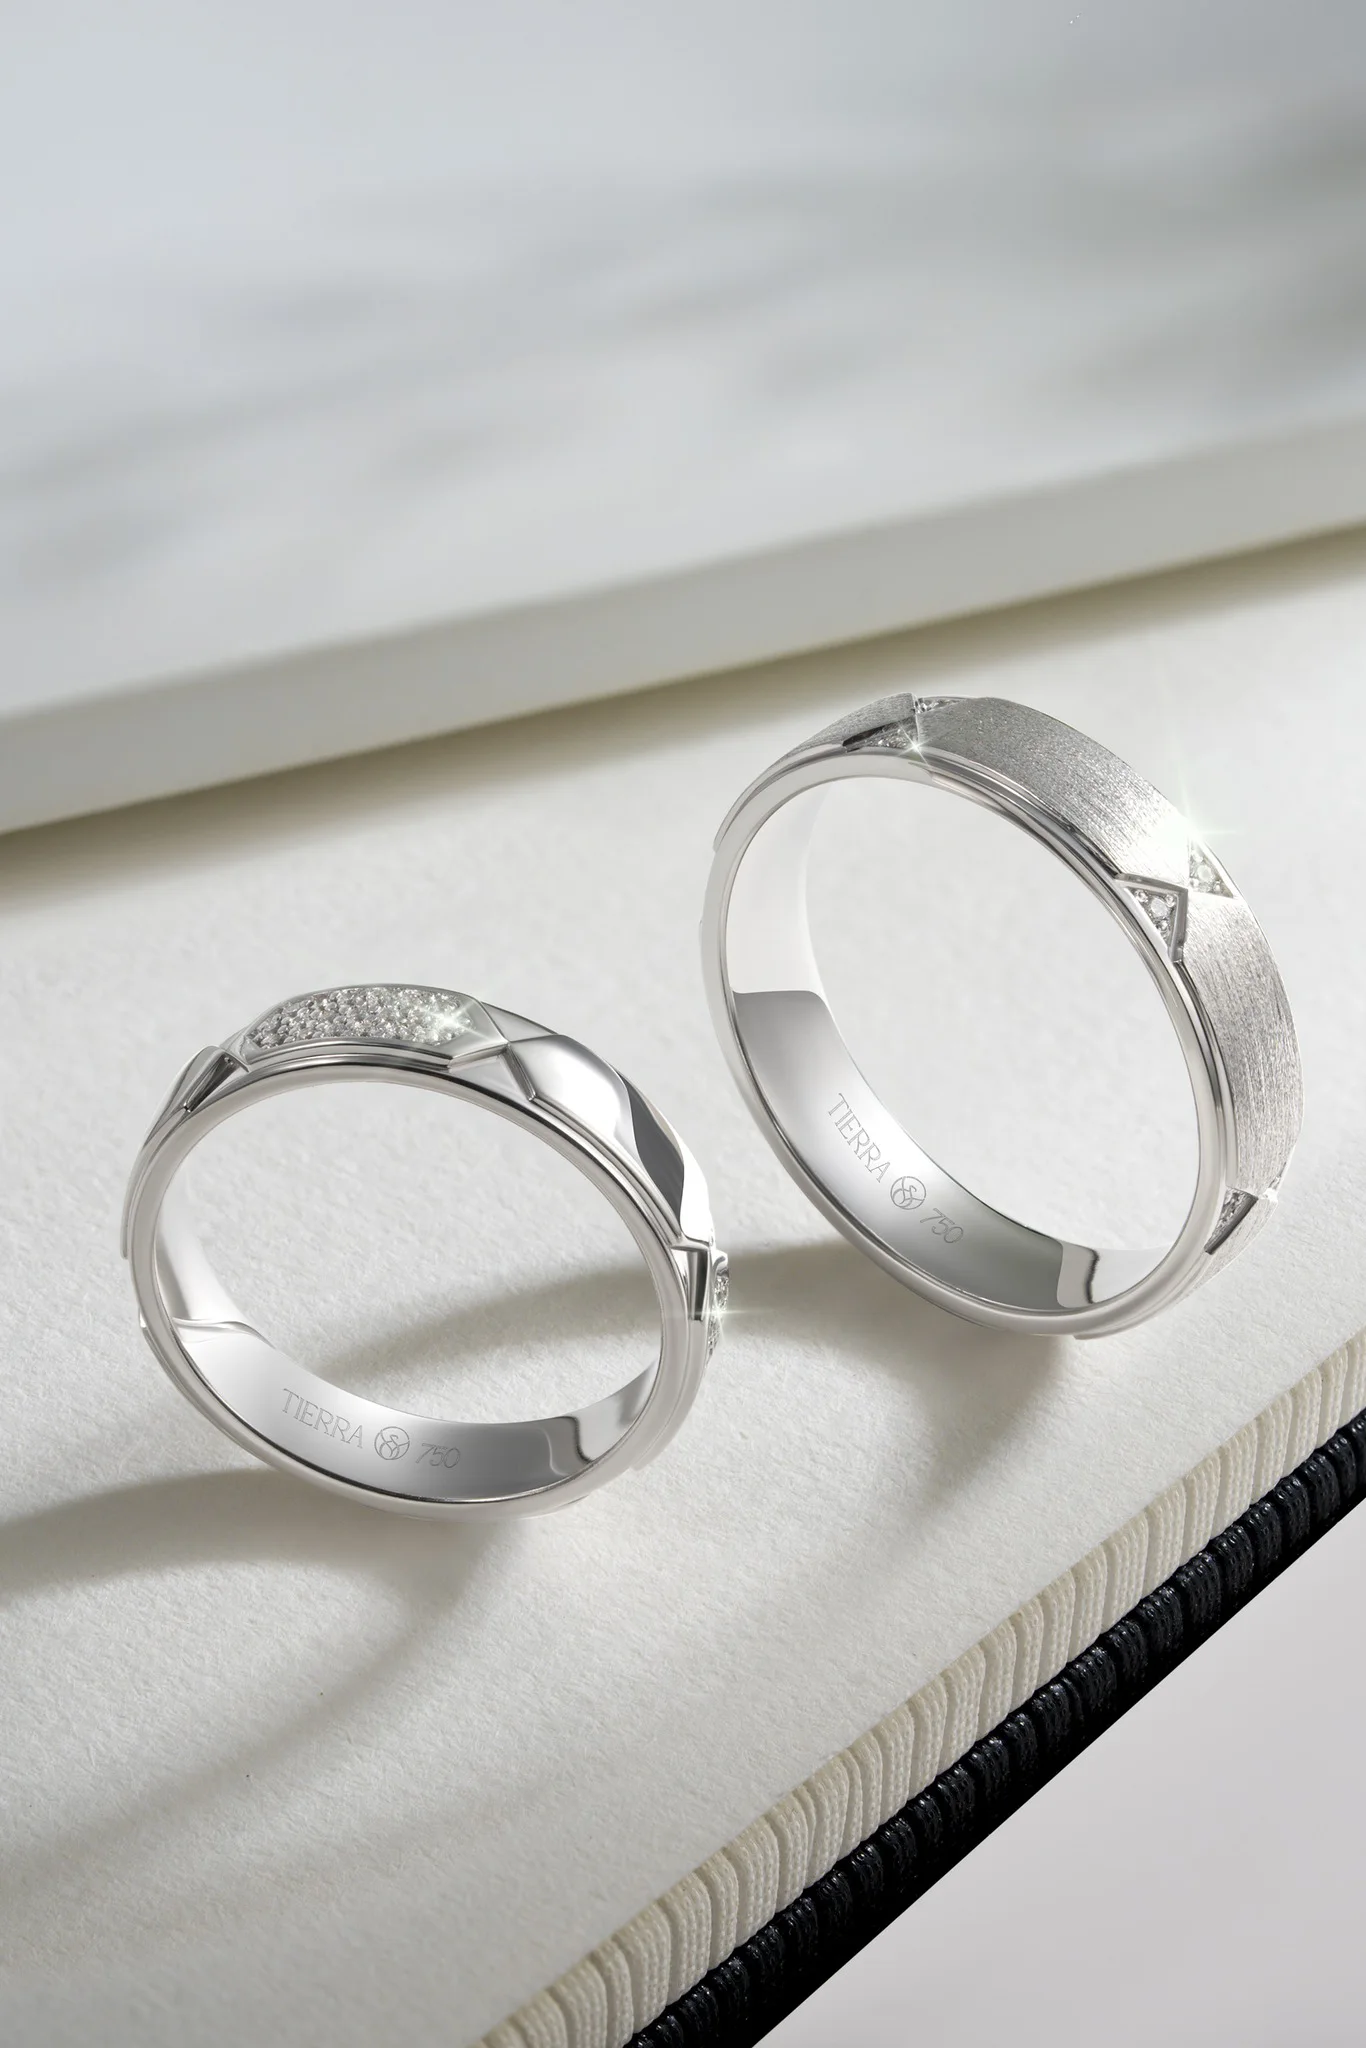 Có nên mua nhẫn cưới bạch kim hay không? Nhẫn cưới bạch kim giá bao nhiêu?